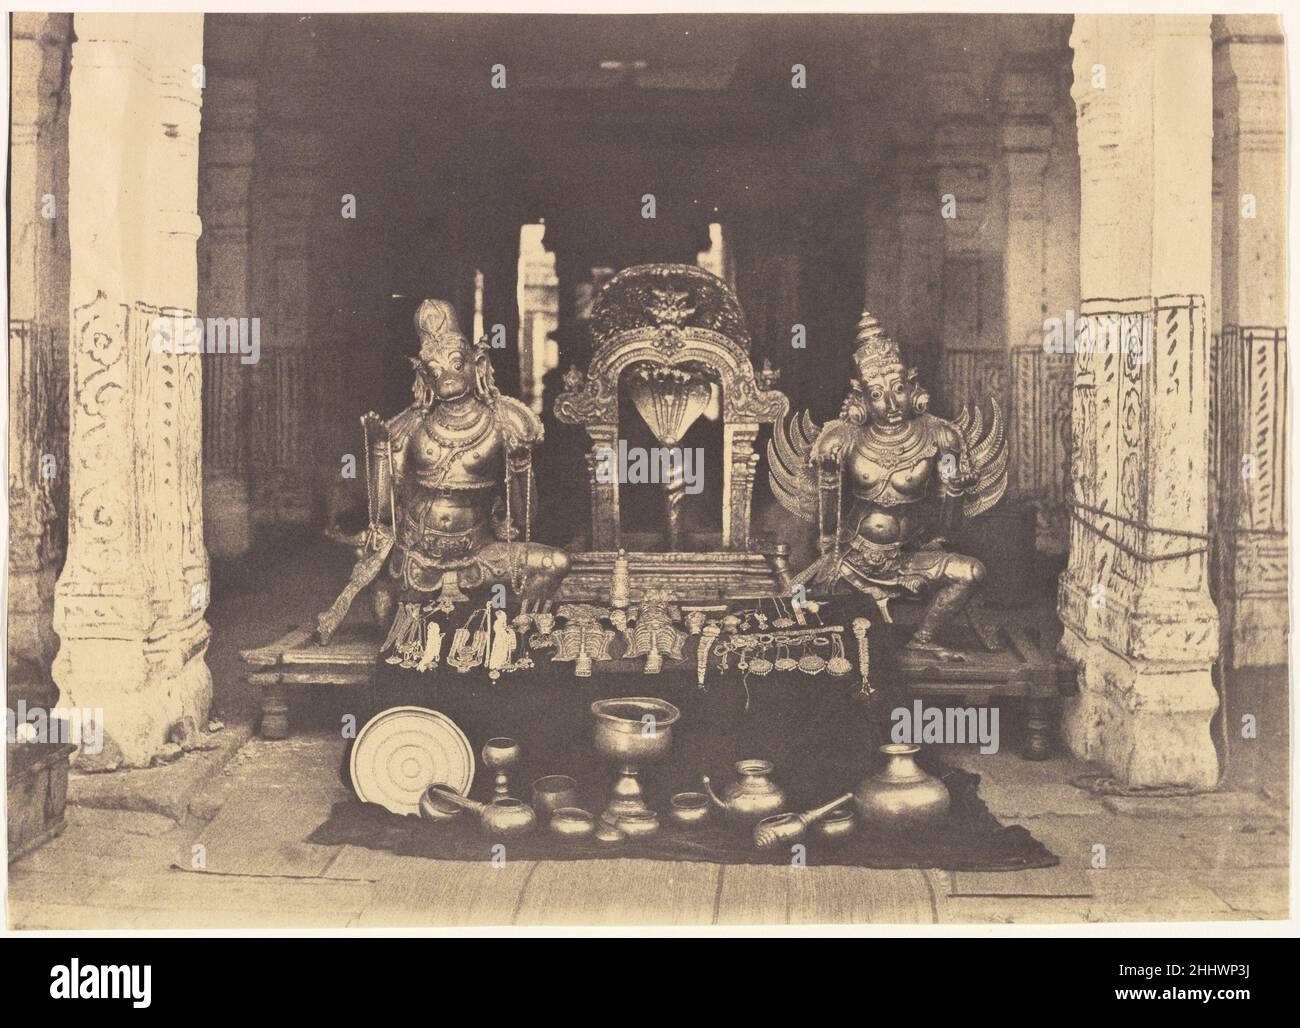 Las Joyas de la Pagoda Enero de 1858 Linnaeus Tripe British Tripe fue un oficial militar de carrera en la India y, a finales de 1850s, Fotógrafo del Gobierno de la Presidencia de Madrás. En sólo cinco años hizo casi mil puntos de vista sobre la India y Birmania. Entre diciembre de 1857 y abril de 1858, Tripe realizó una gira ambiciosa y difícil por los distritos meridionales de la India para crear un récord para el gobierno de las antigüedades de la región, escenas de importancia histórica y fenómenos naturales. En una parada en el gran templo de Srirangam, grabó una espléndida exhibición de sus tesoros en un fotograma Foto de stock